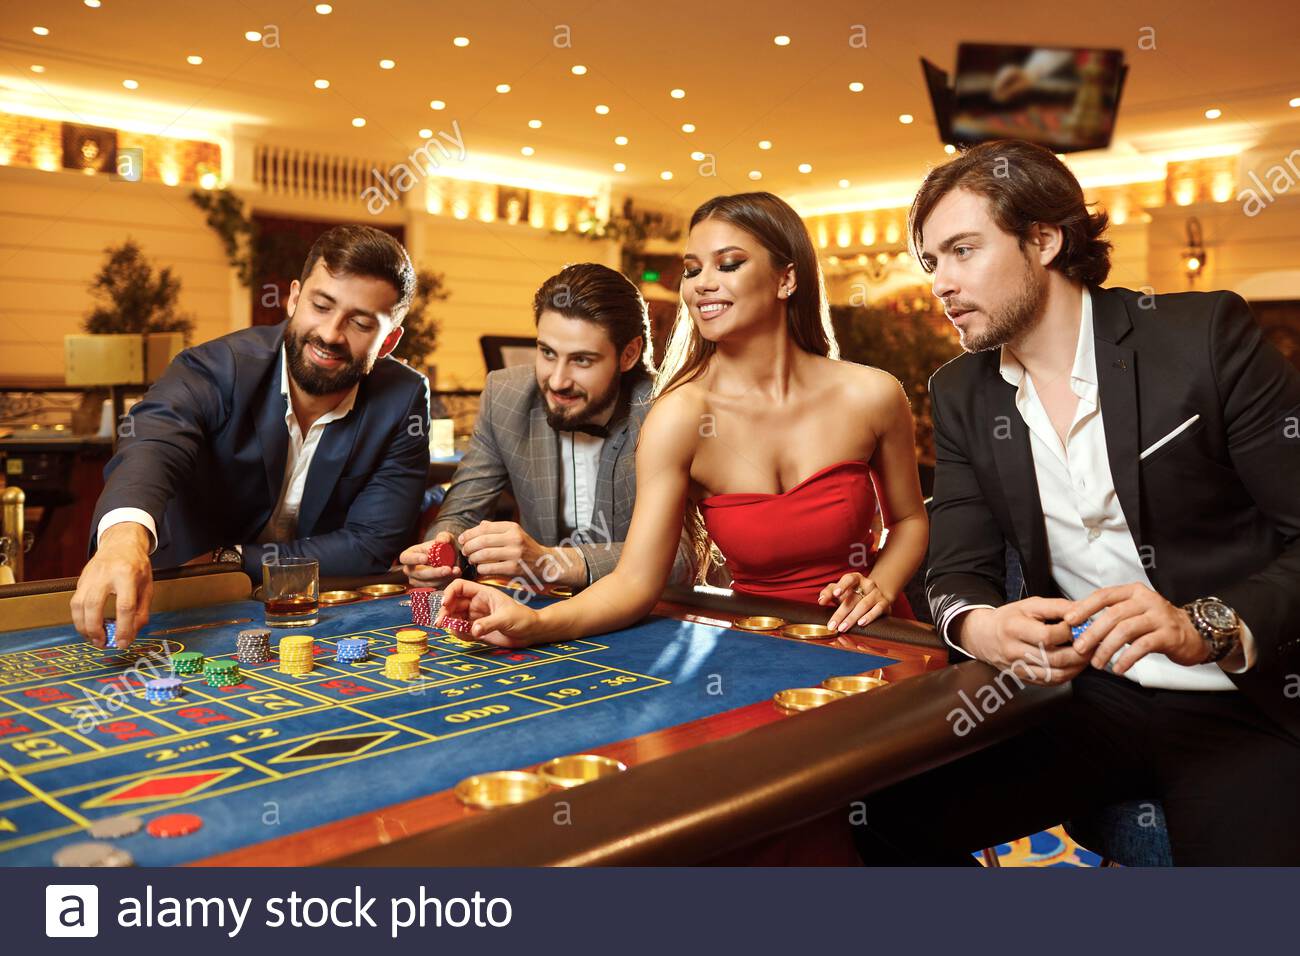 Best bet casino